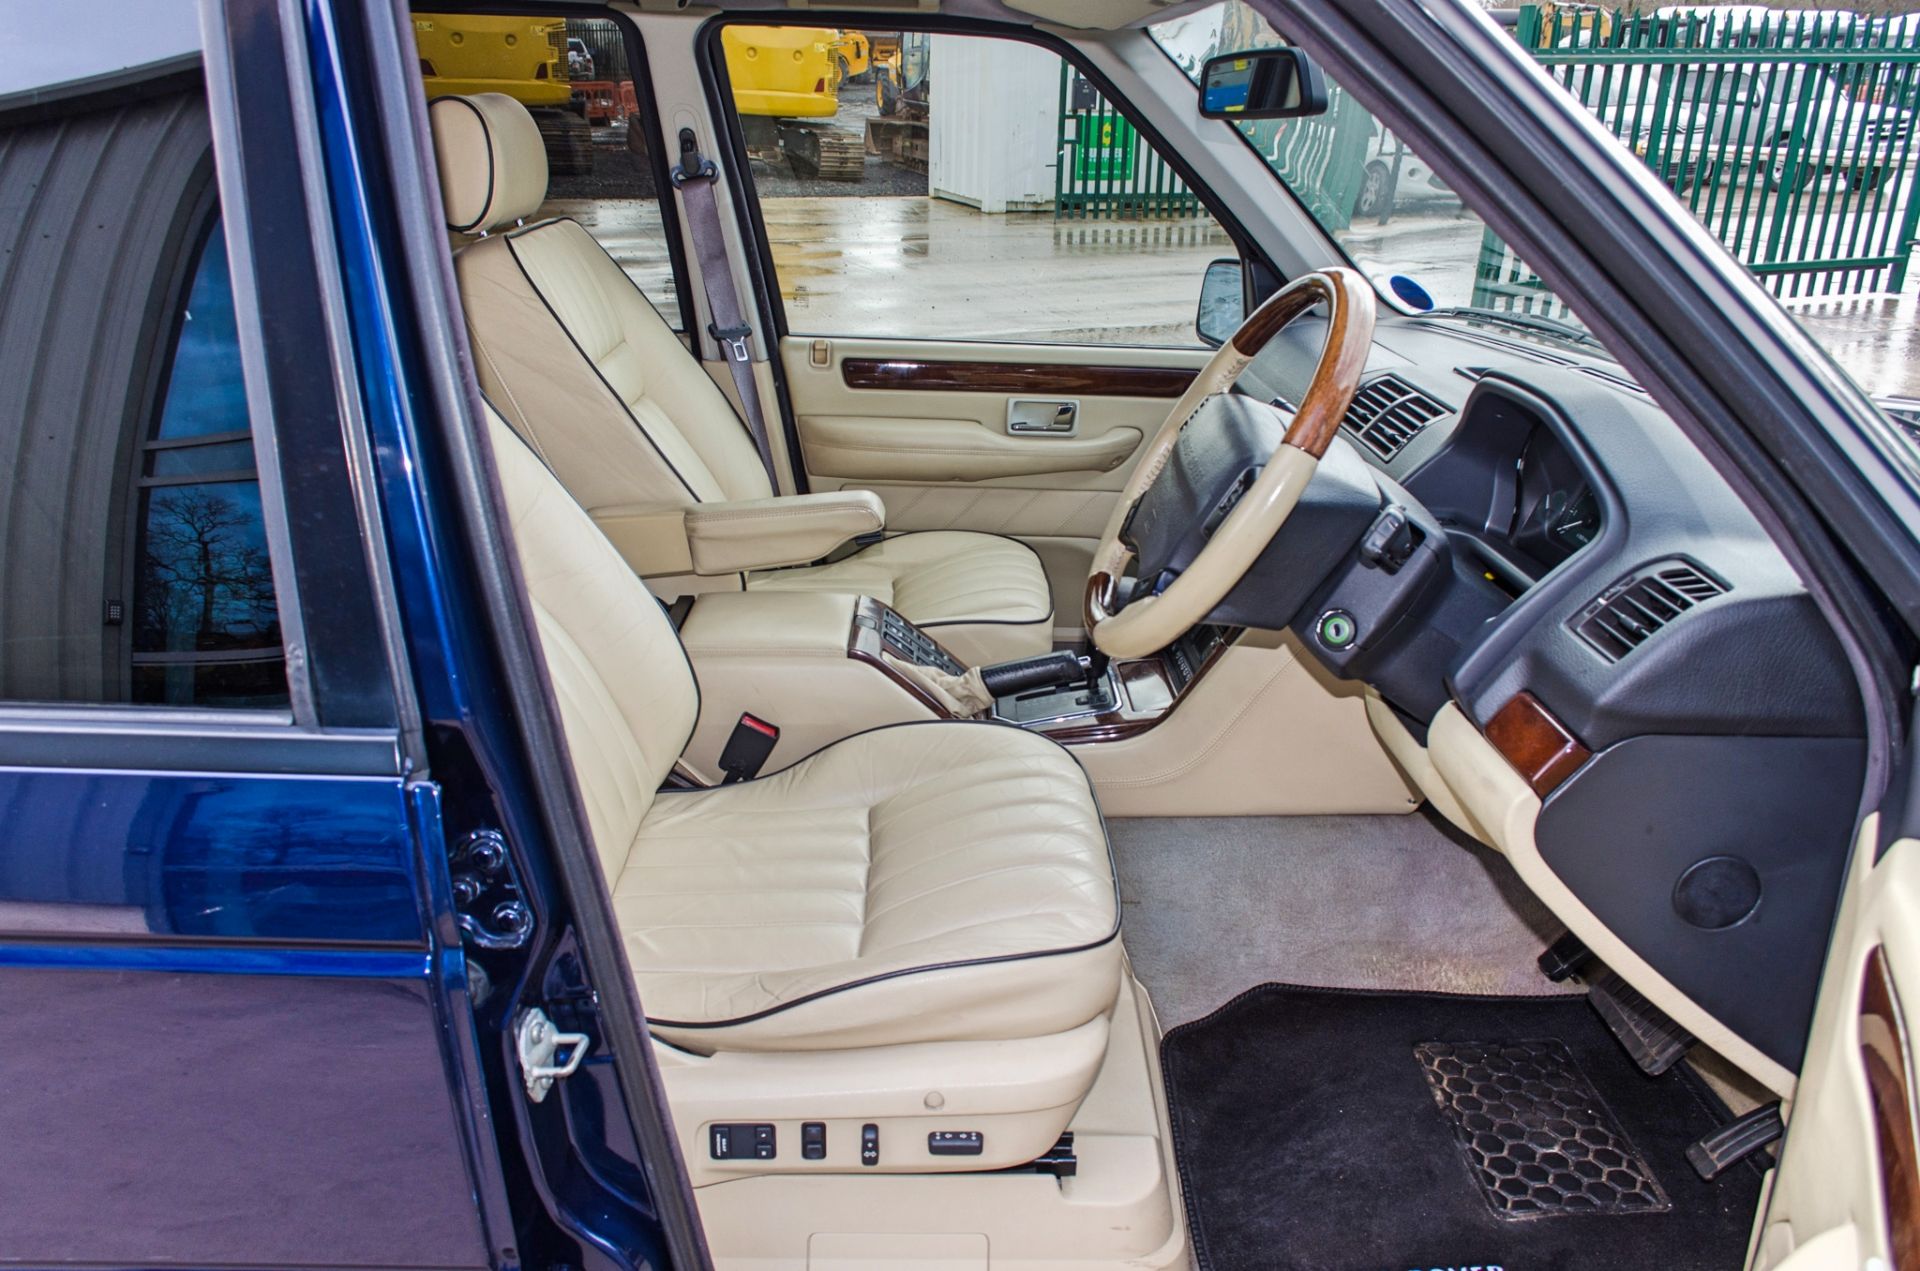 2001 Range Rover Vogue 4.6 litre V8 Auto 4 door SUV estate Registration: Y498 HNP Chassis: - Image 37 of 65